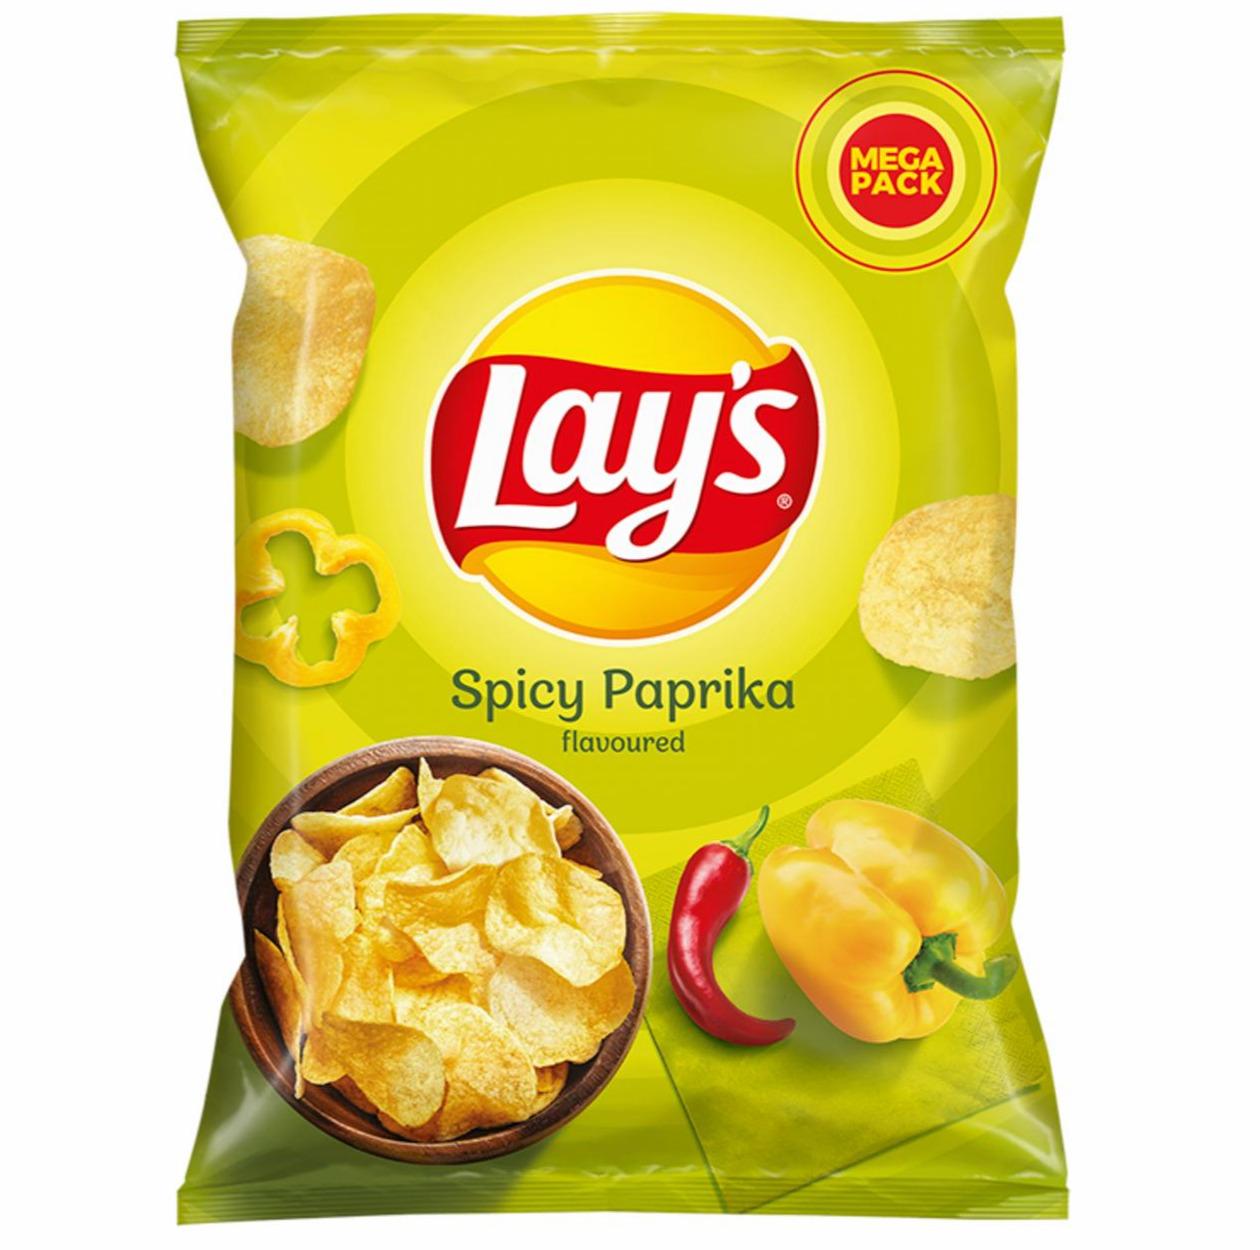 Zdjęcia - Lay's Chipsy ziemniaczane o smaku pikantnej papryki 215 g